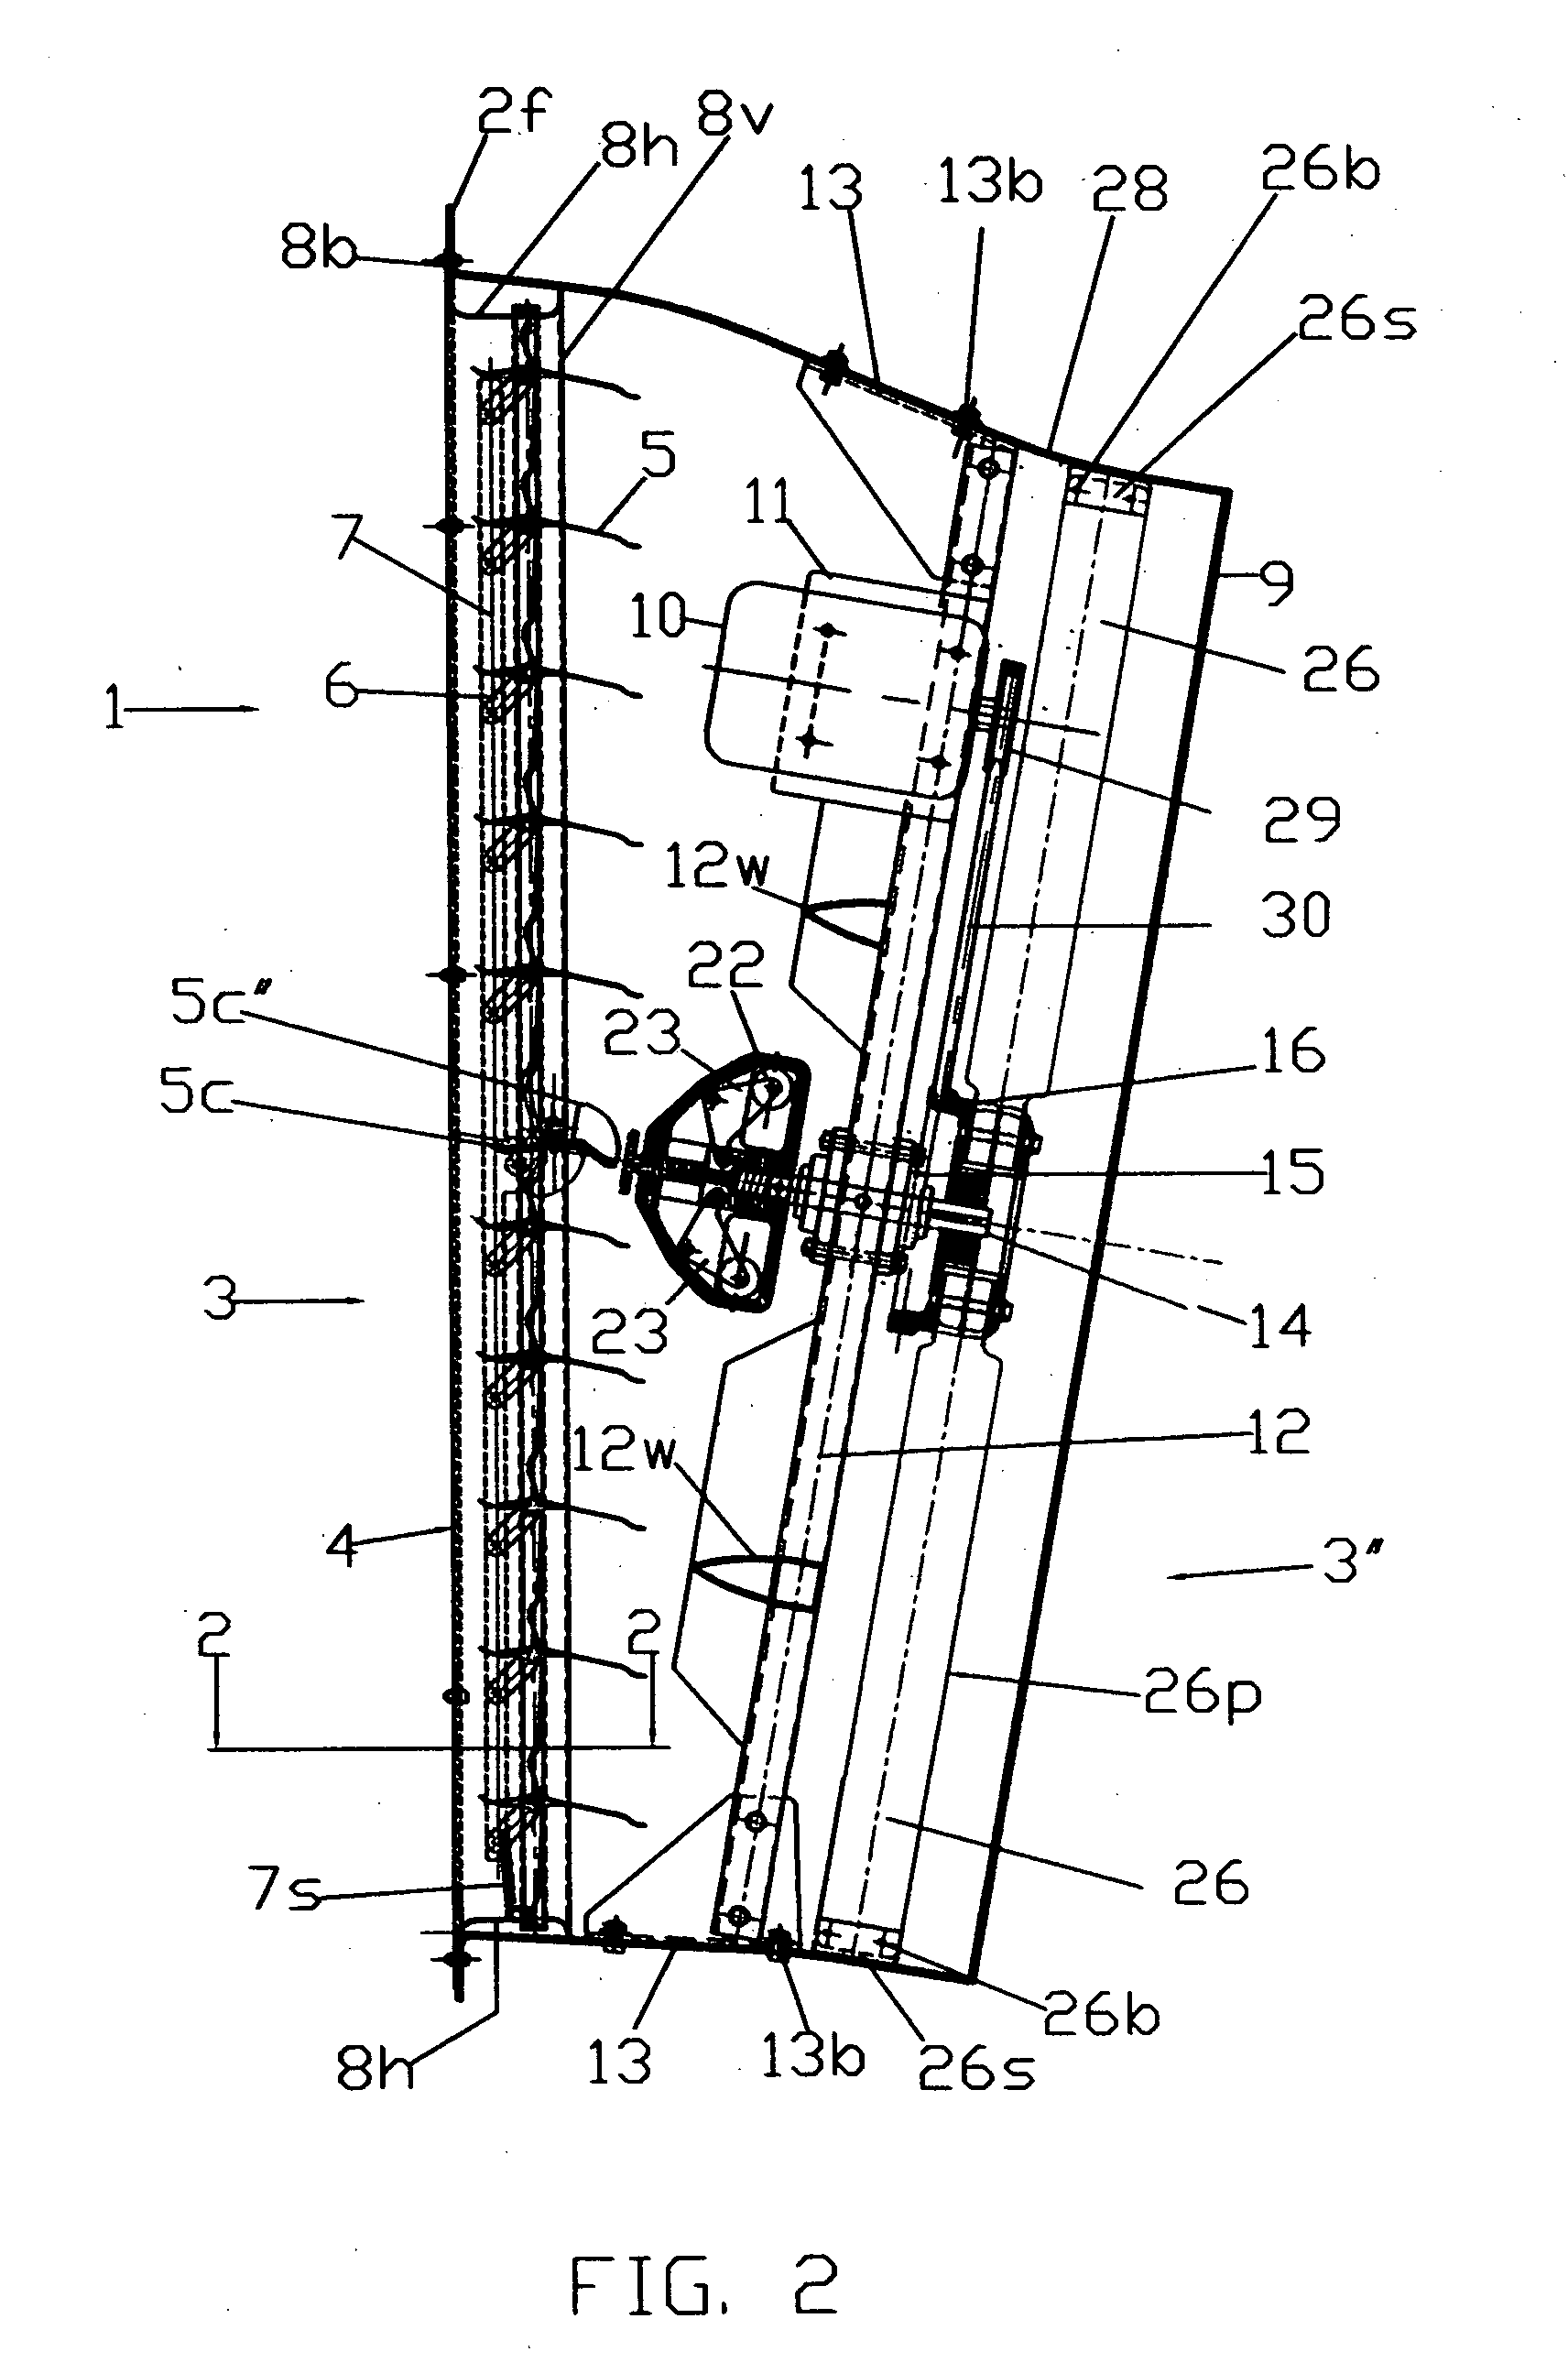 Versatile axial fan and centrifugal shutter mechanism